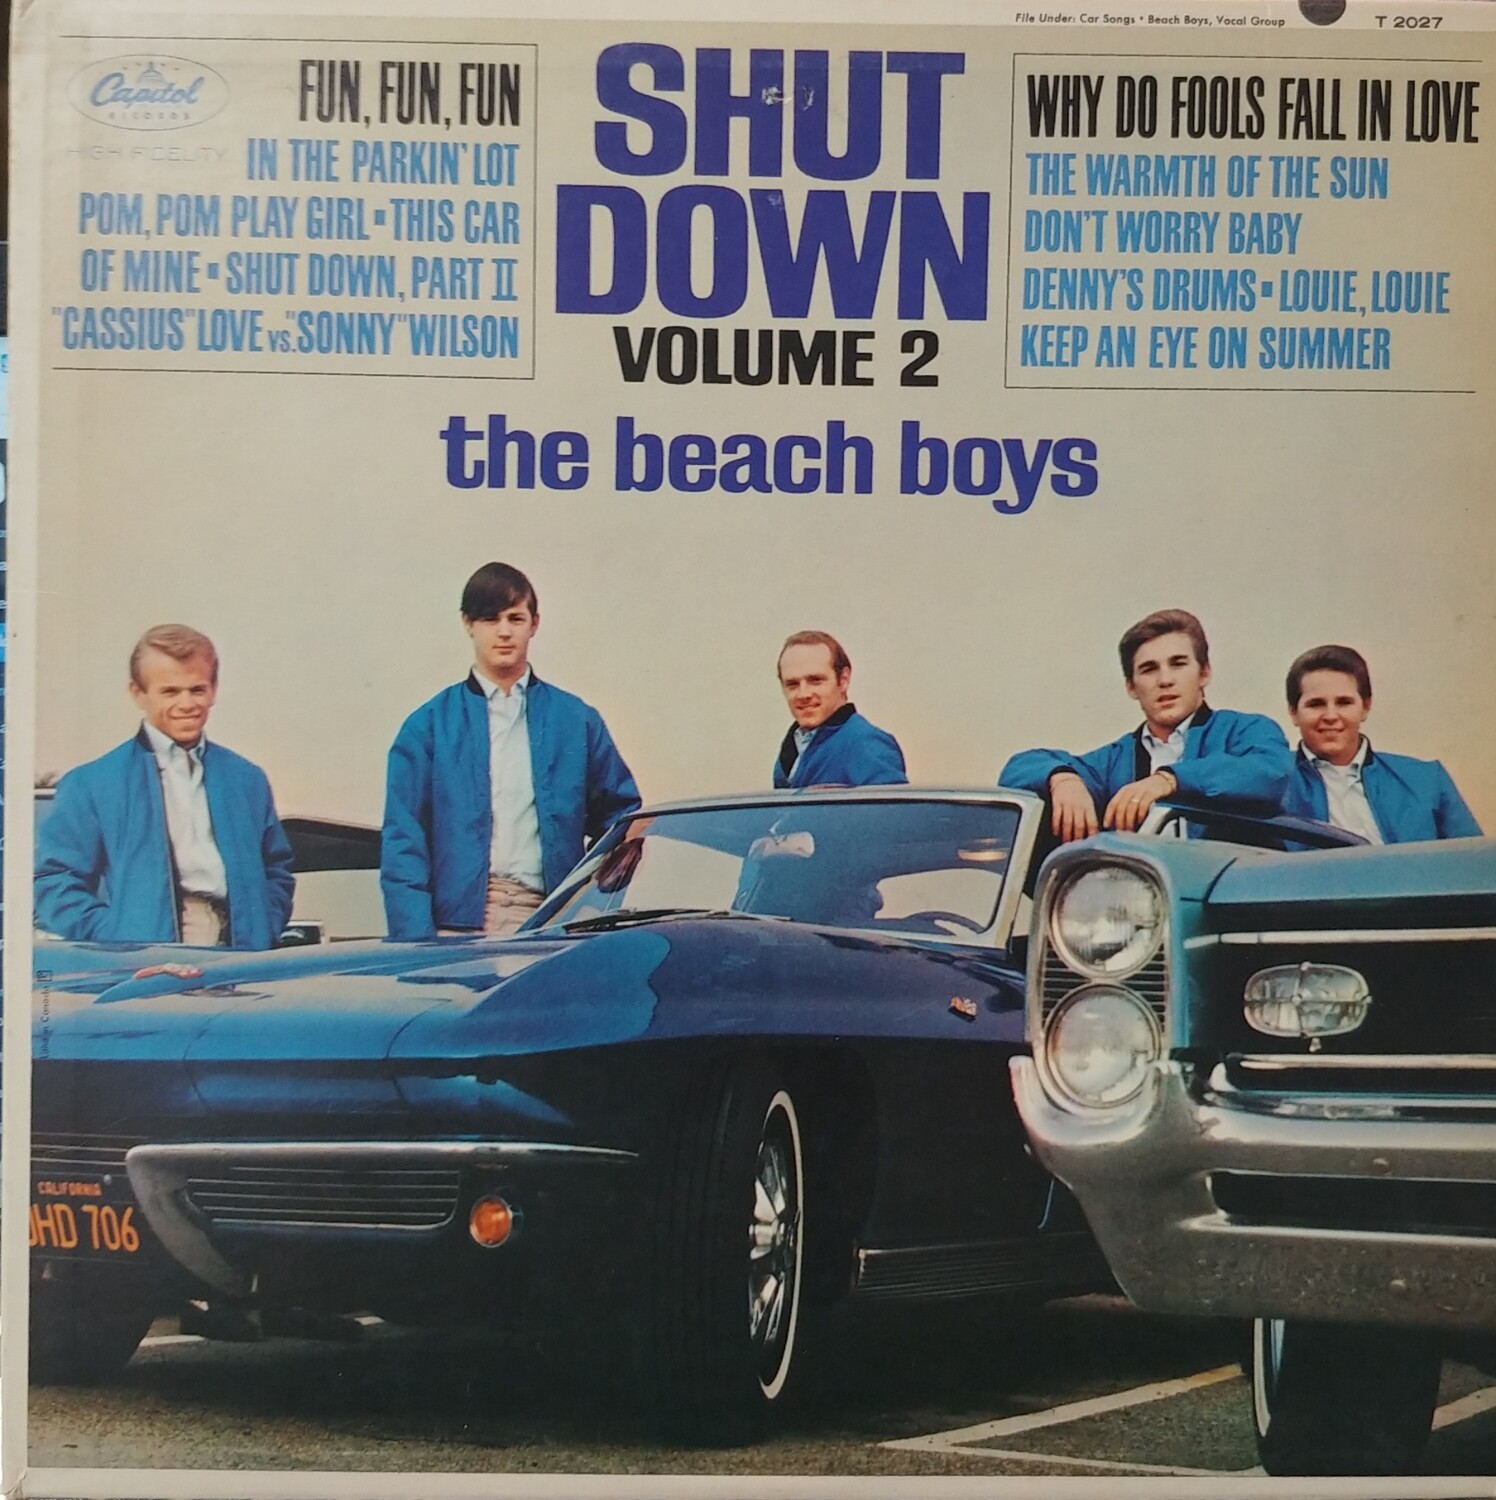 The Beach Boys - Shut Down volume 2